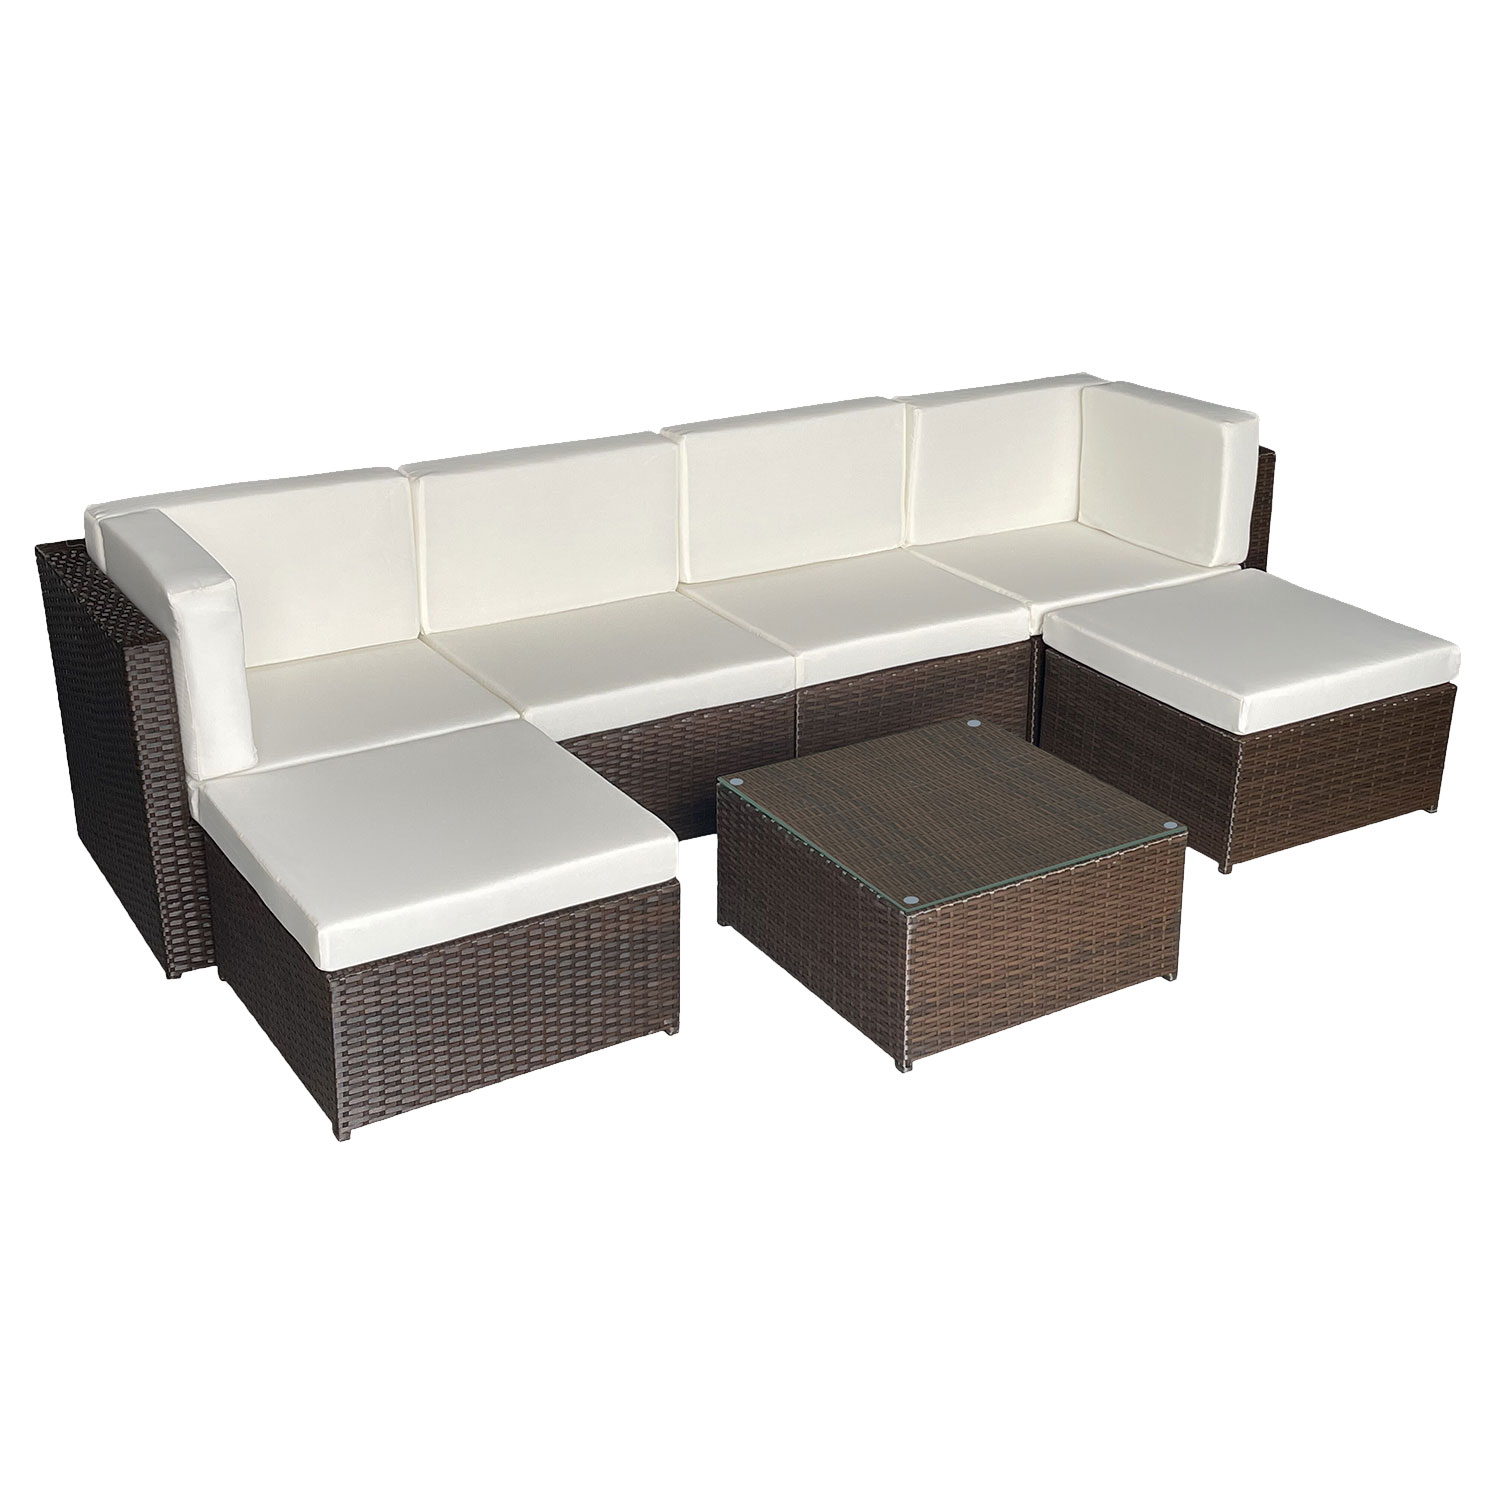 Conjunto de muebles de jardín BONIFACIO de resina tejida marrón 6 asientos - cojín crema